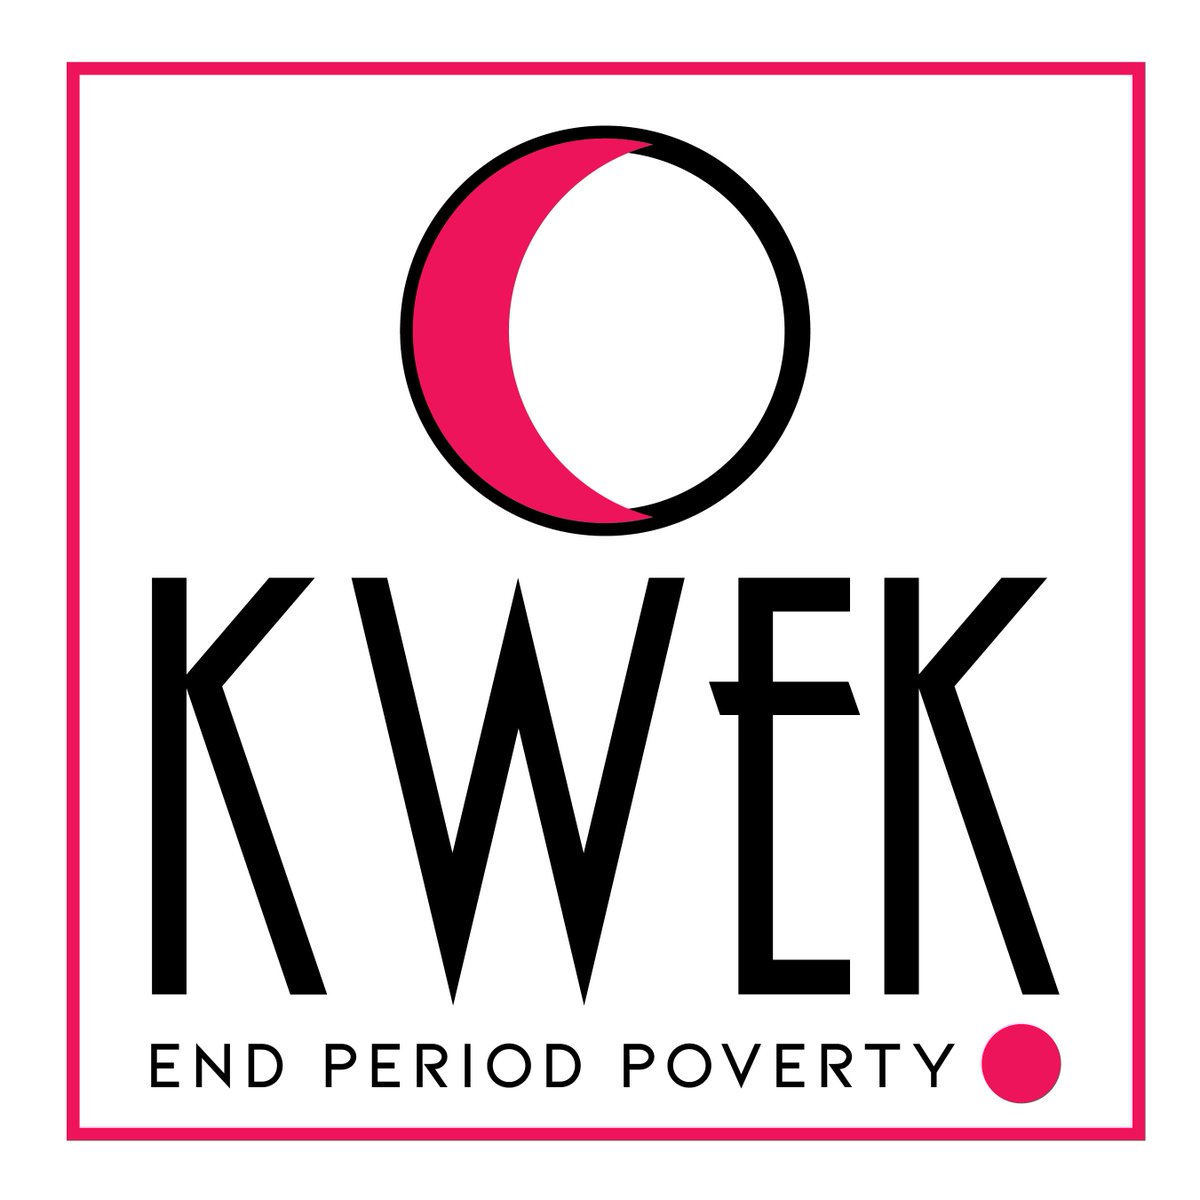 The Kwek Society